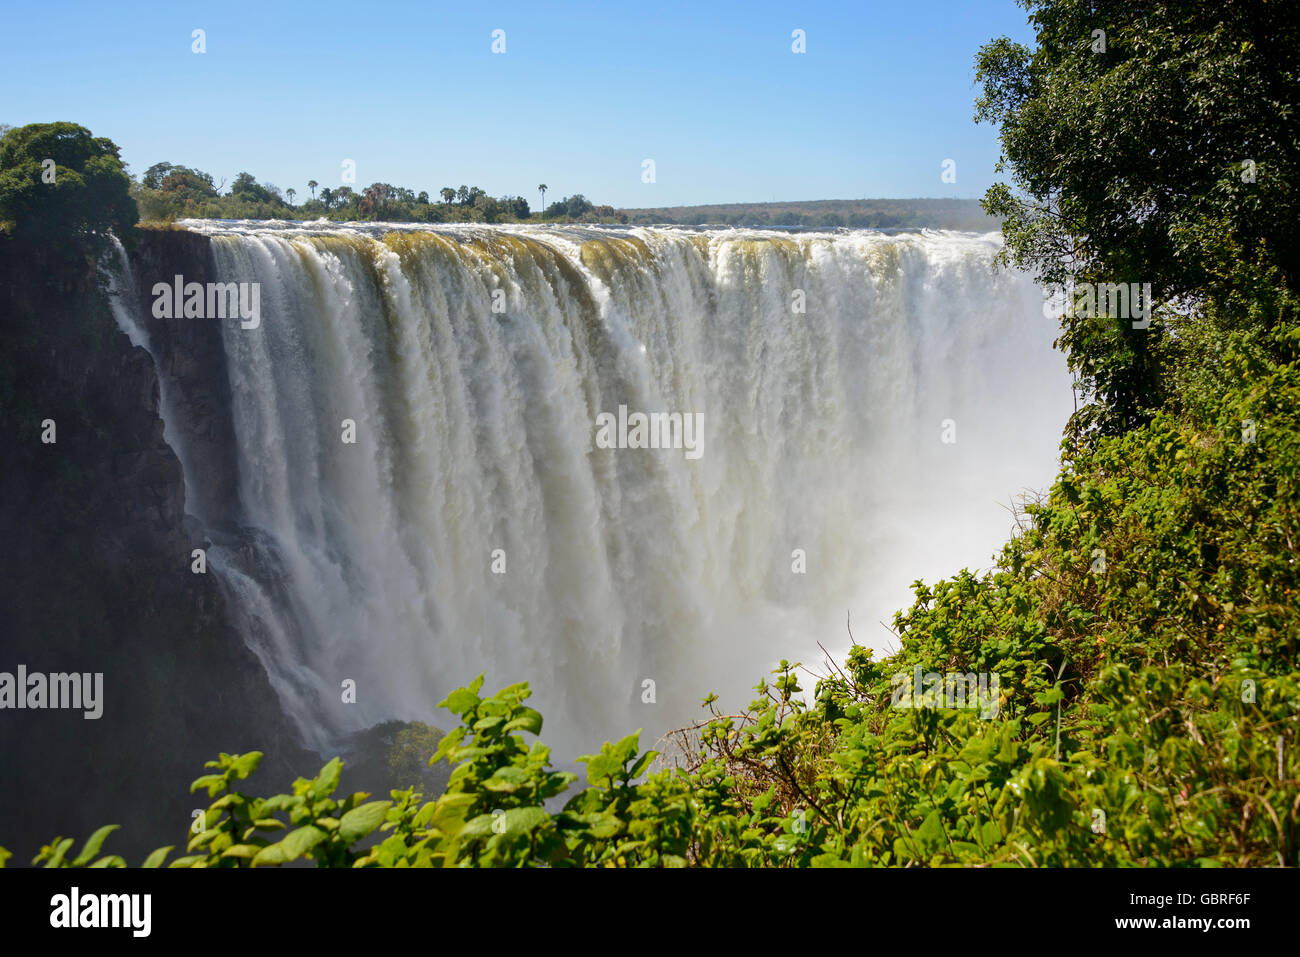 Zambesi river, Victoria falls, Zambia and Zimbabwe Stock Photo